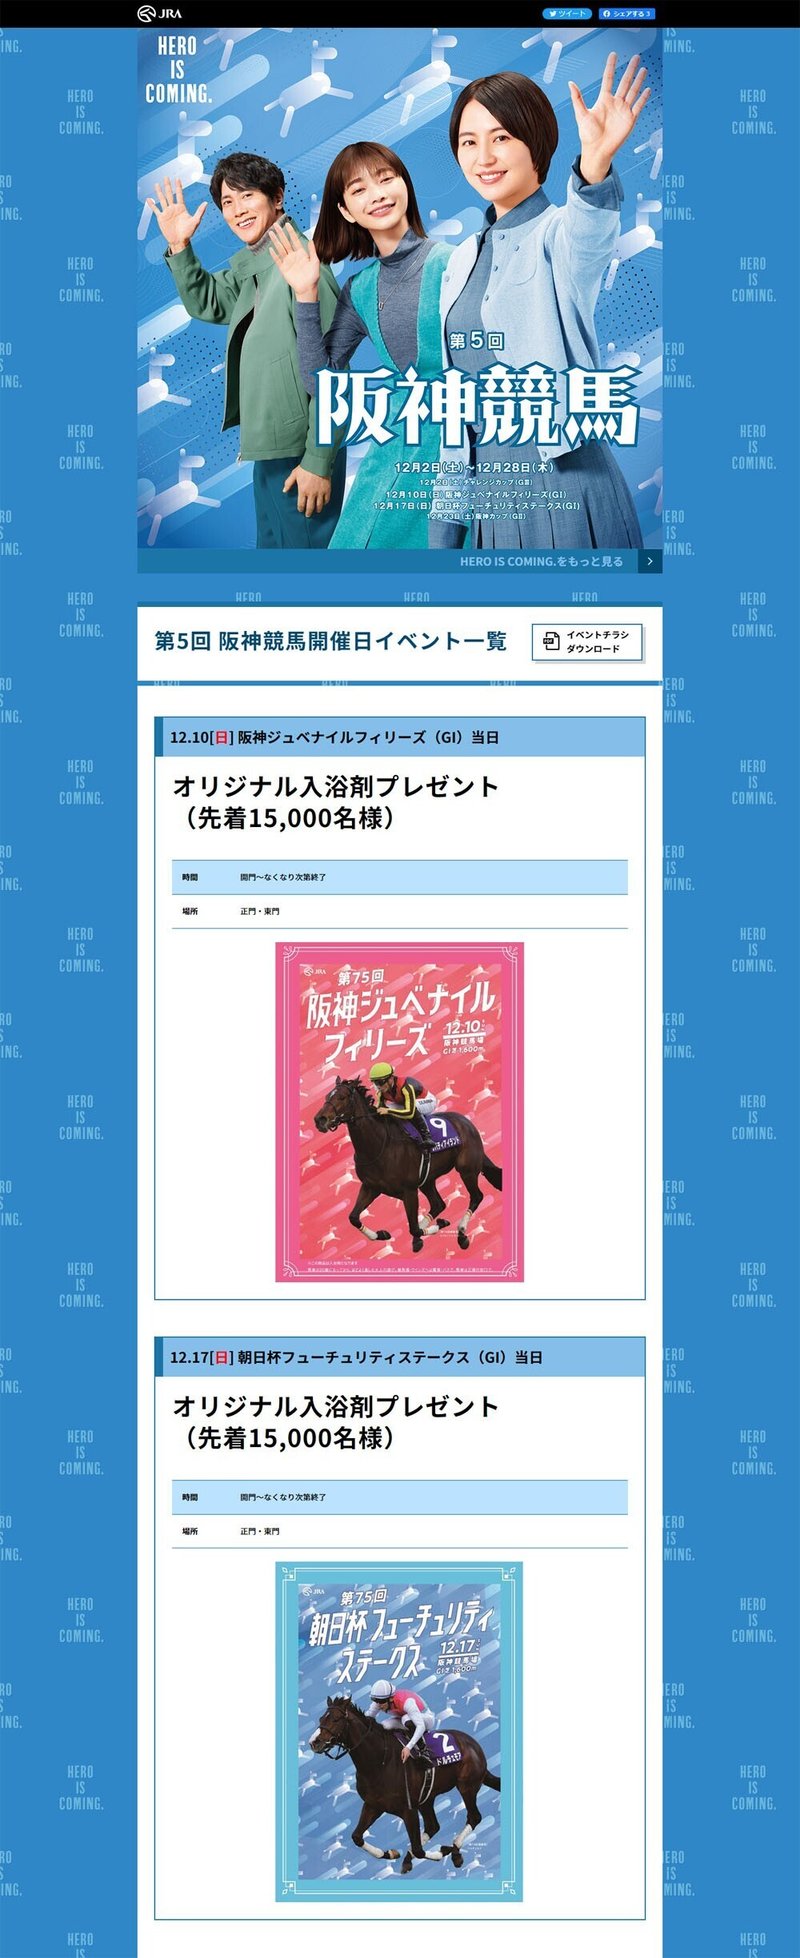 JRA公式ホームページ「第5回阪神開催イベント告知」のページにある阪神ジュベナイルフィリーズのポスター風の画像。